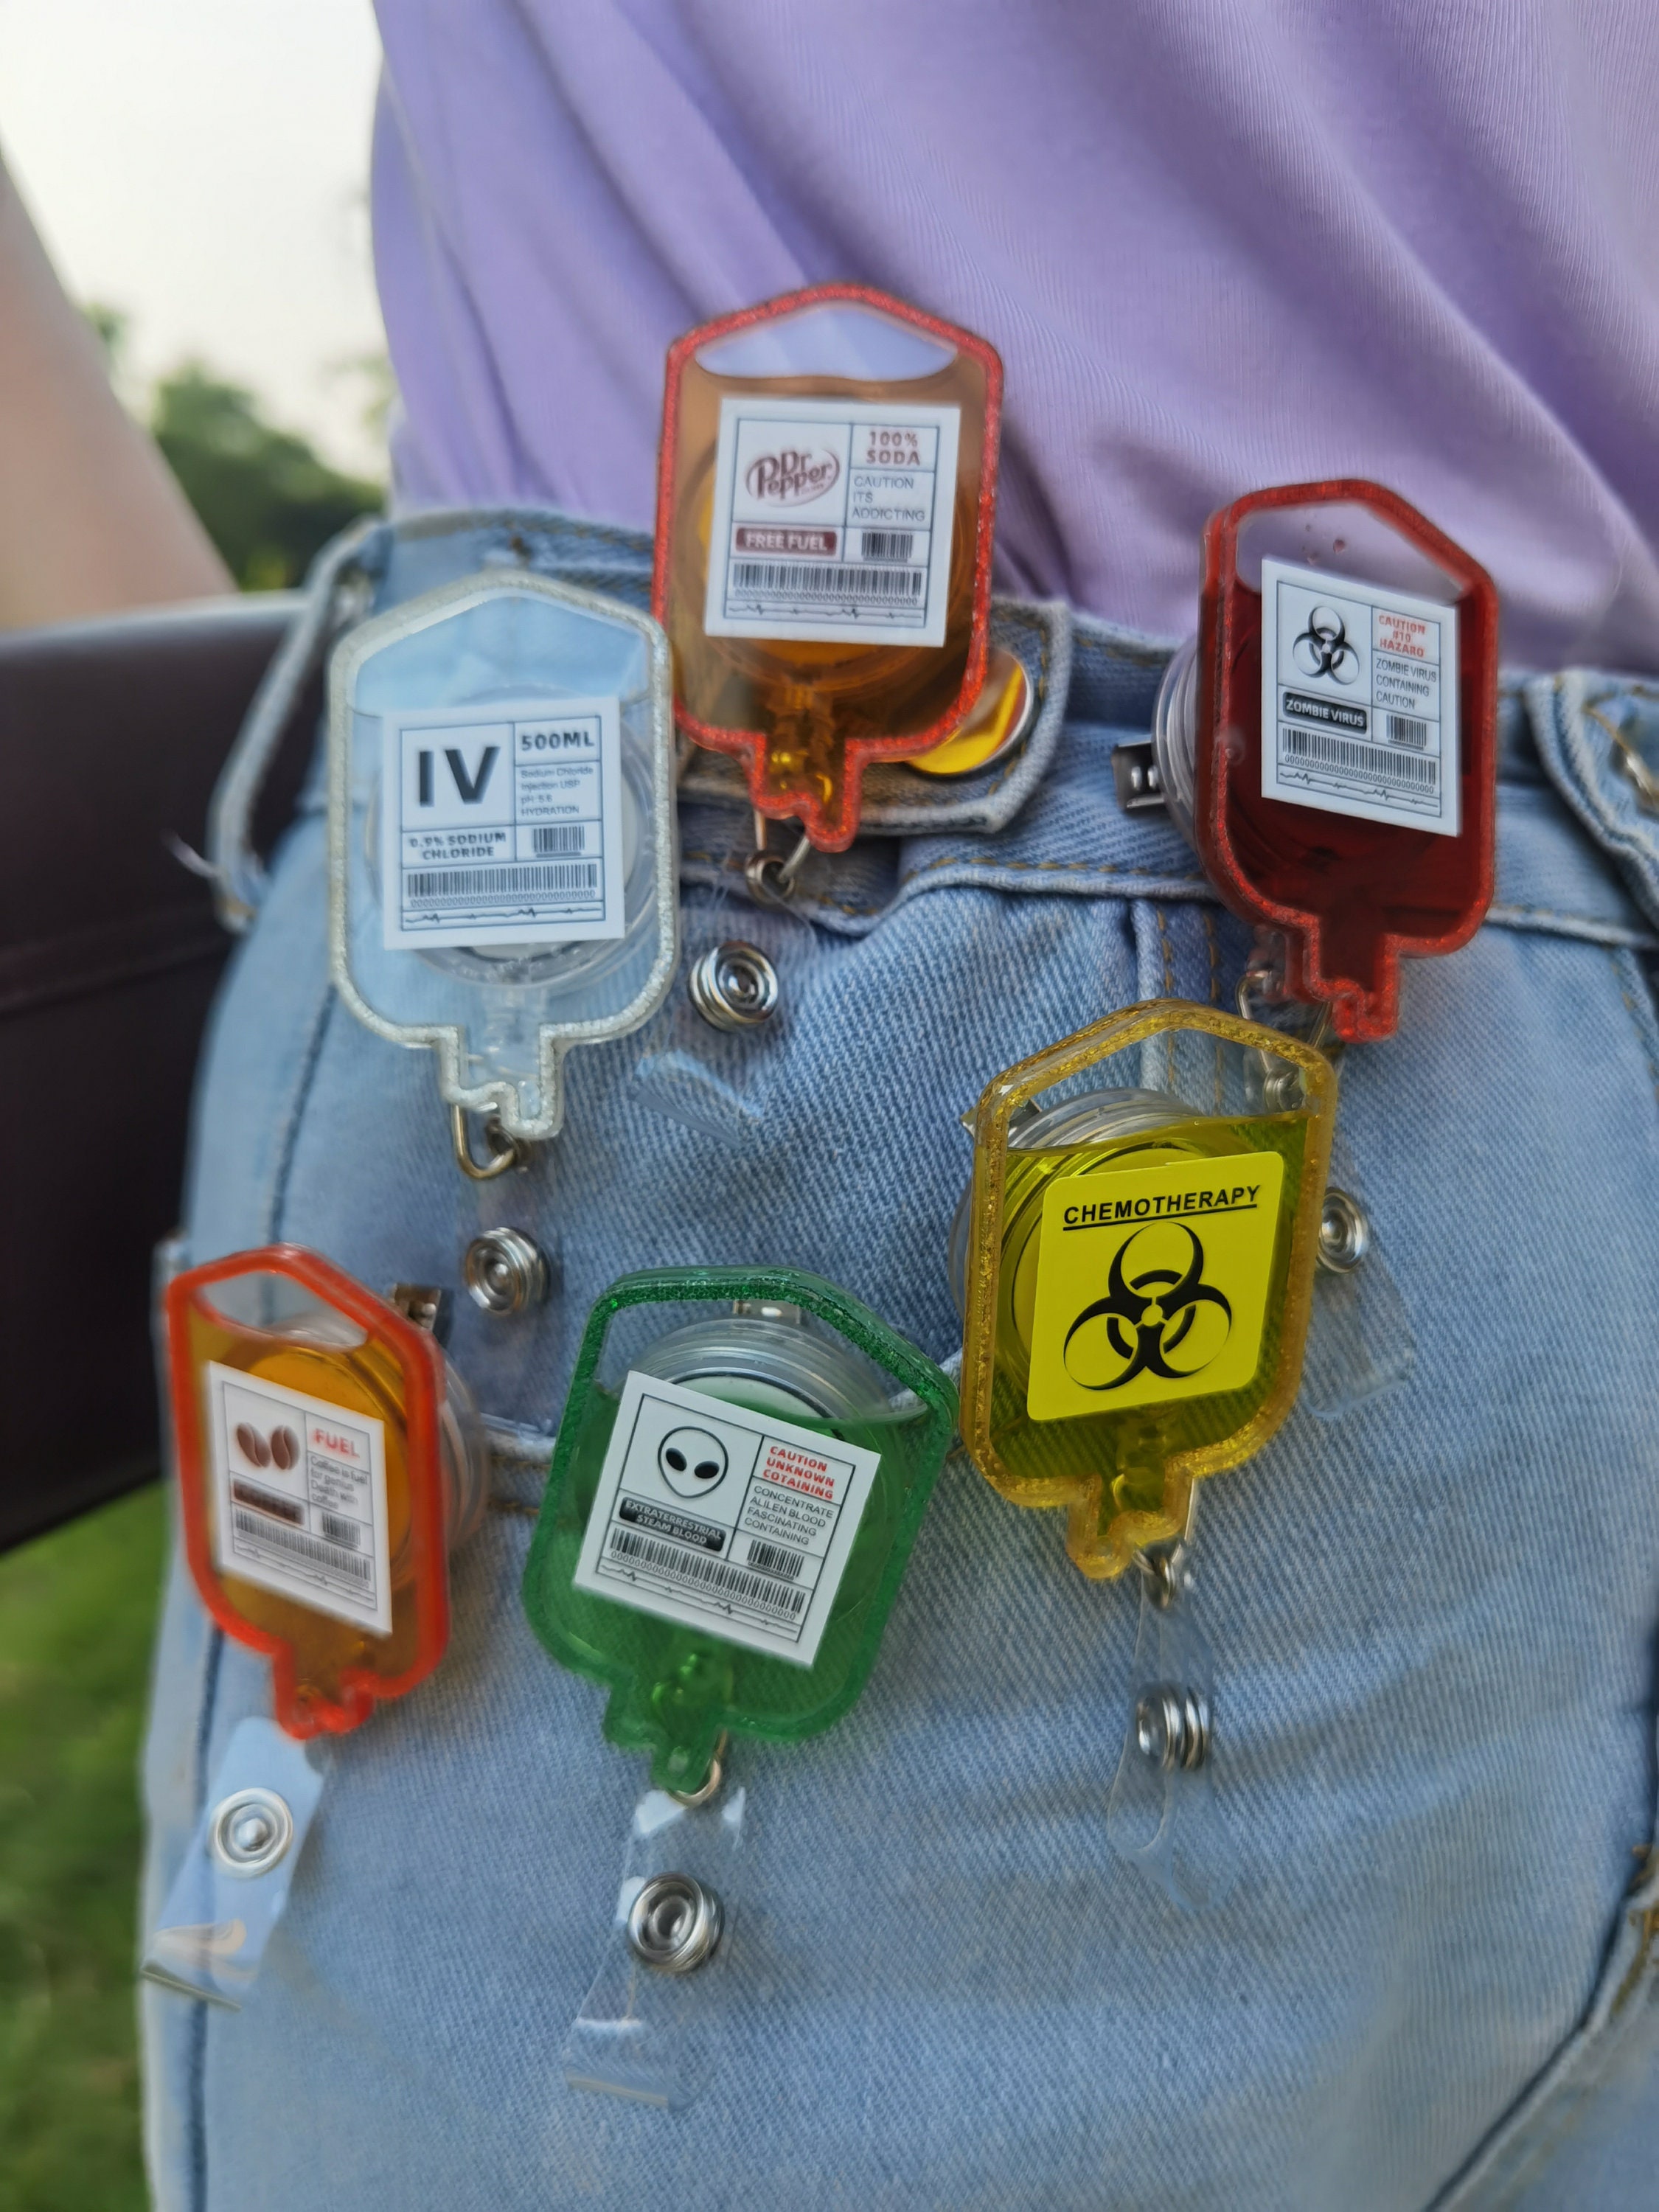 Handmade IV Blood Bag Badge Reel,iv Blood,funny Badge Reel,gift for Nursing  School Student,gift for Nurse -  Canada